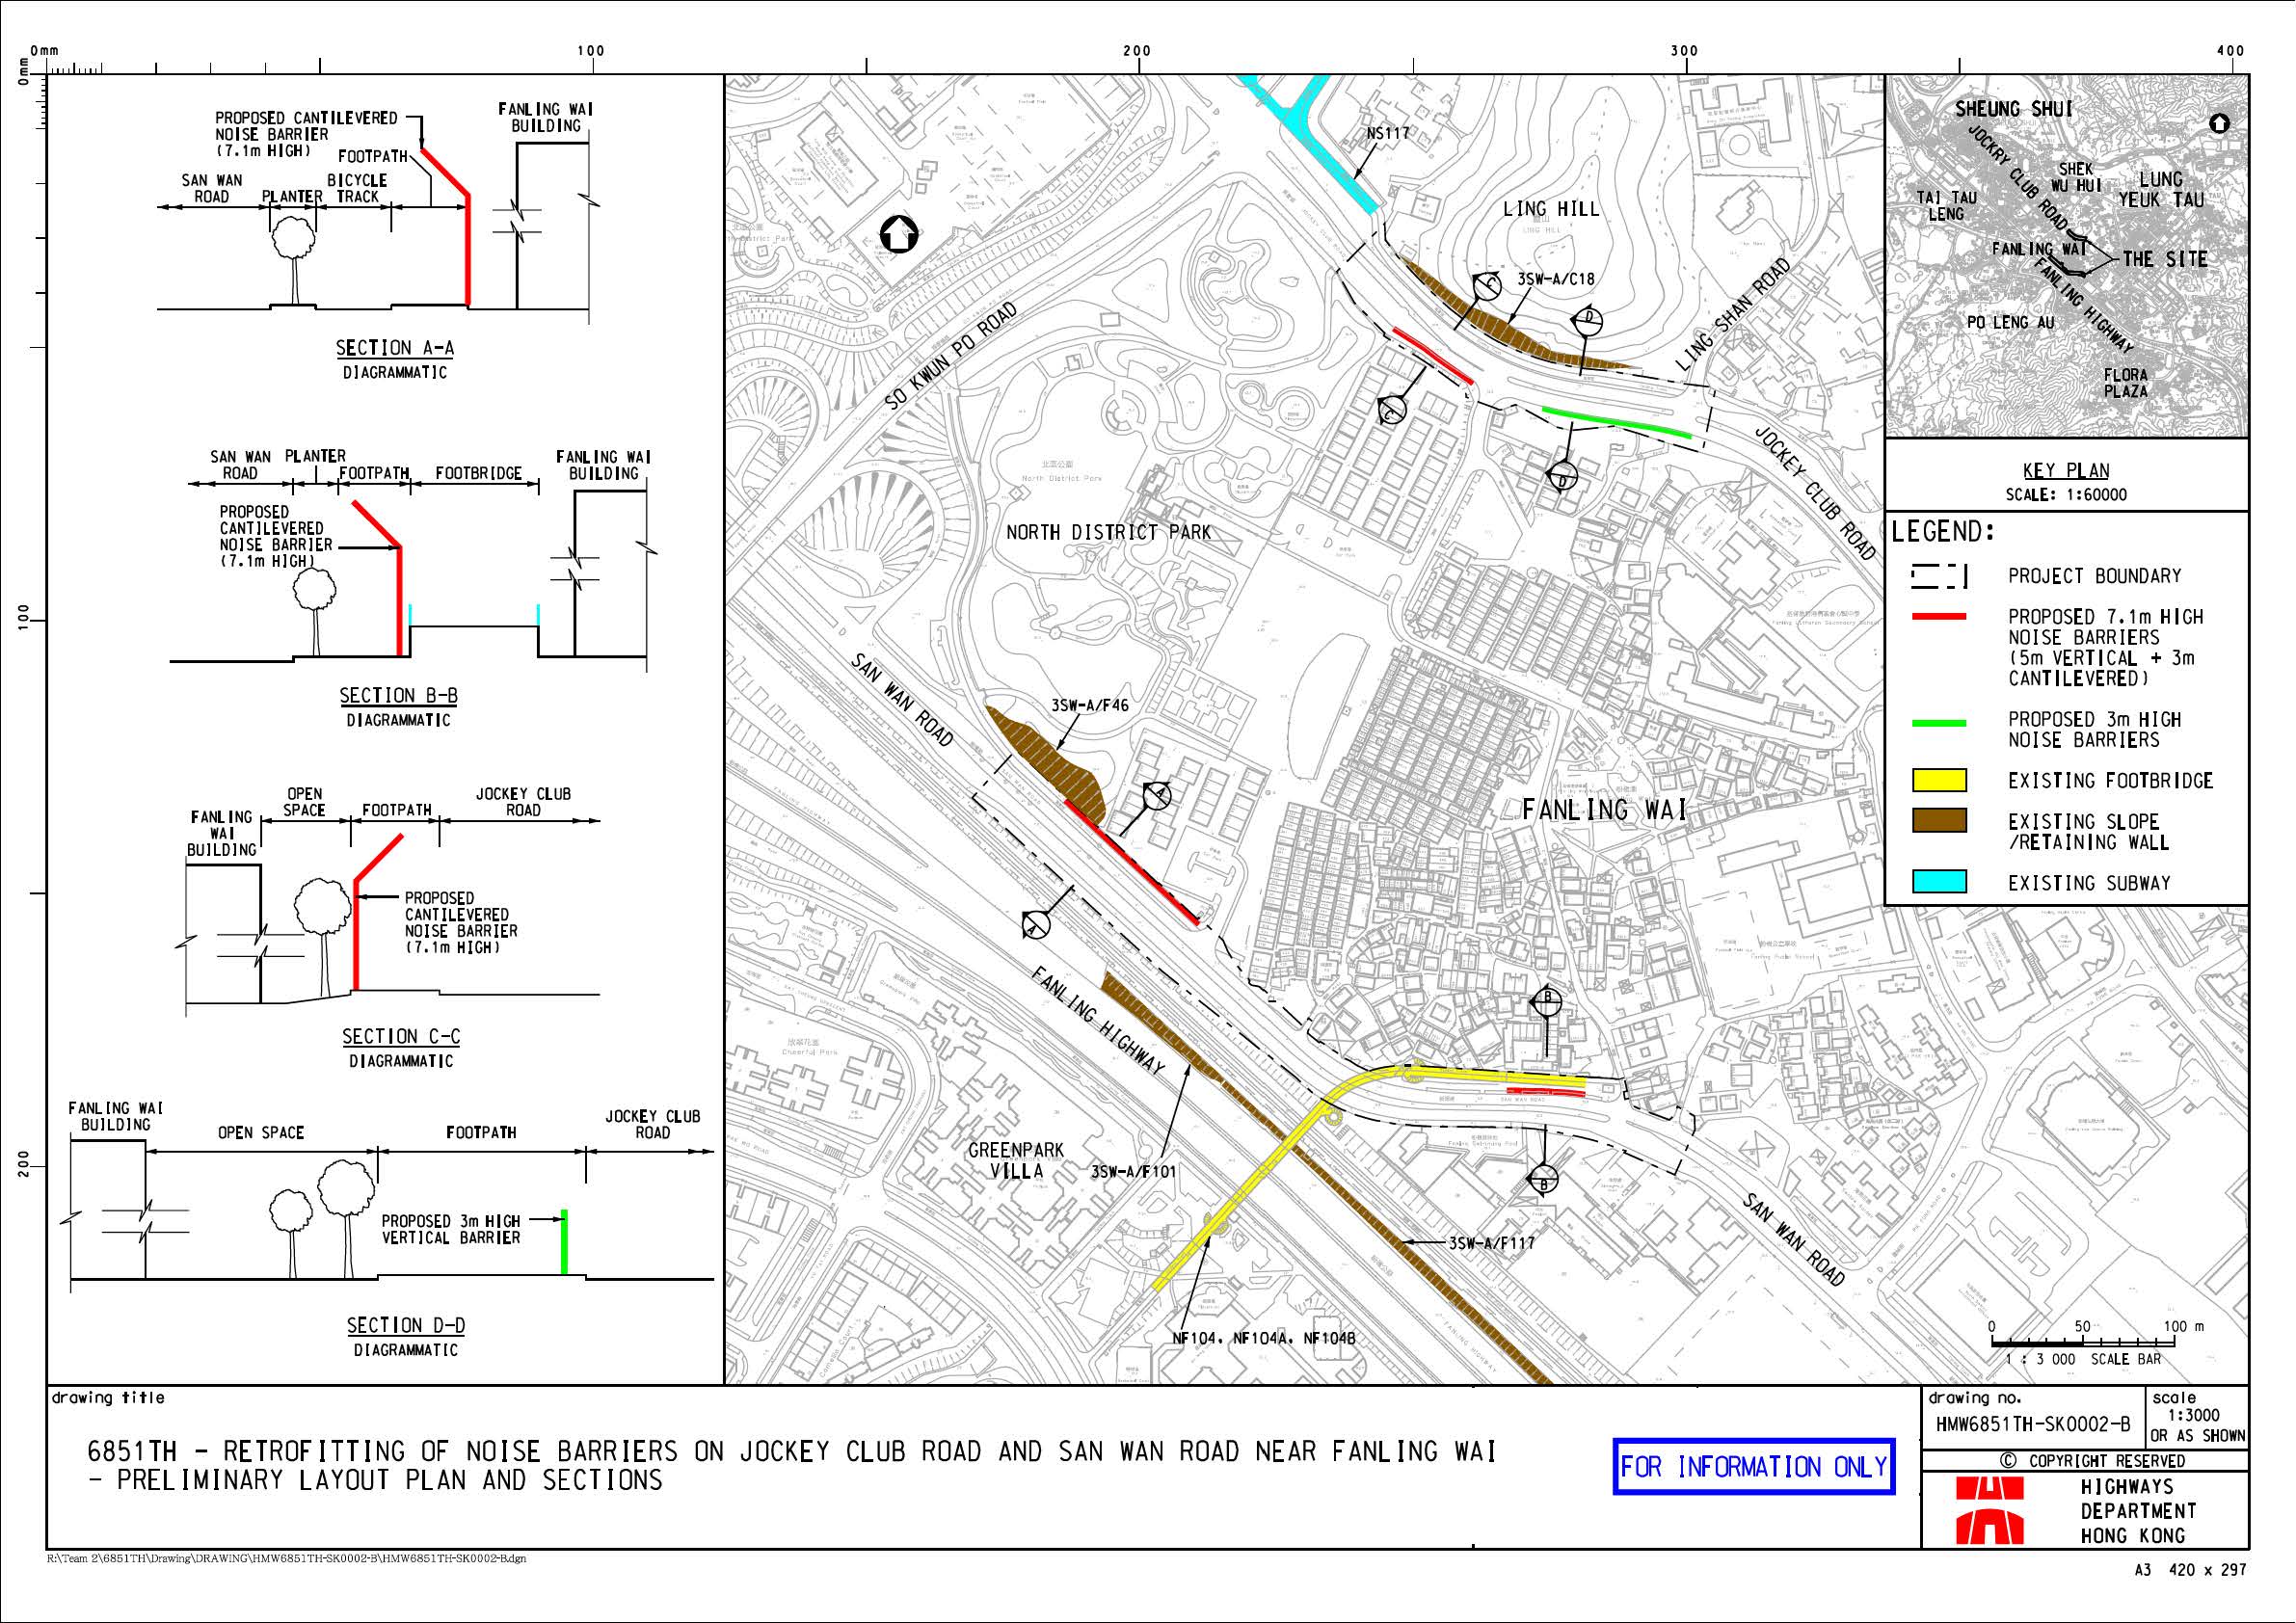 馬會道和新運路(近粉嶺圍)加建隔音屏障工程 – 平面圖